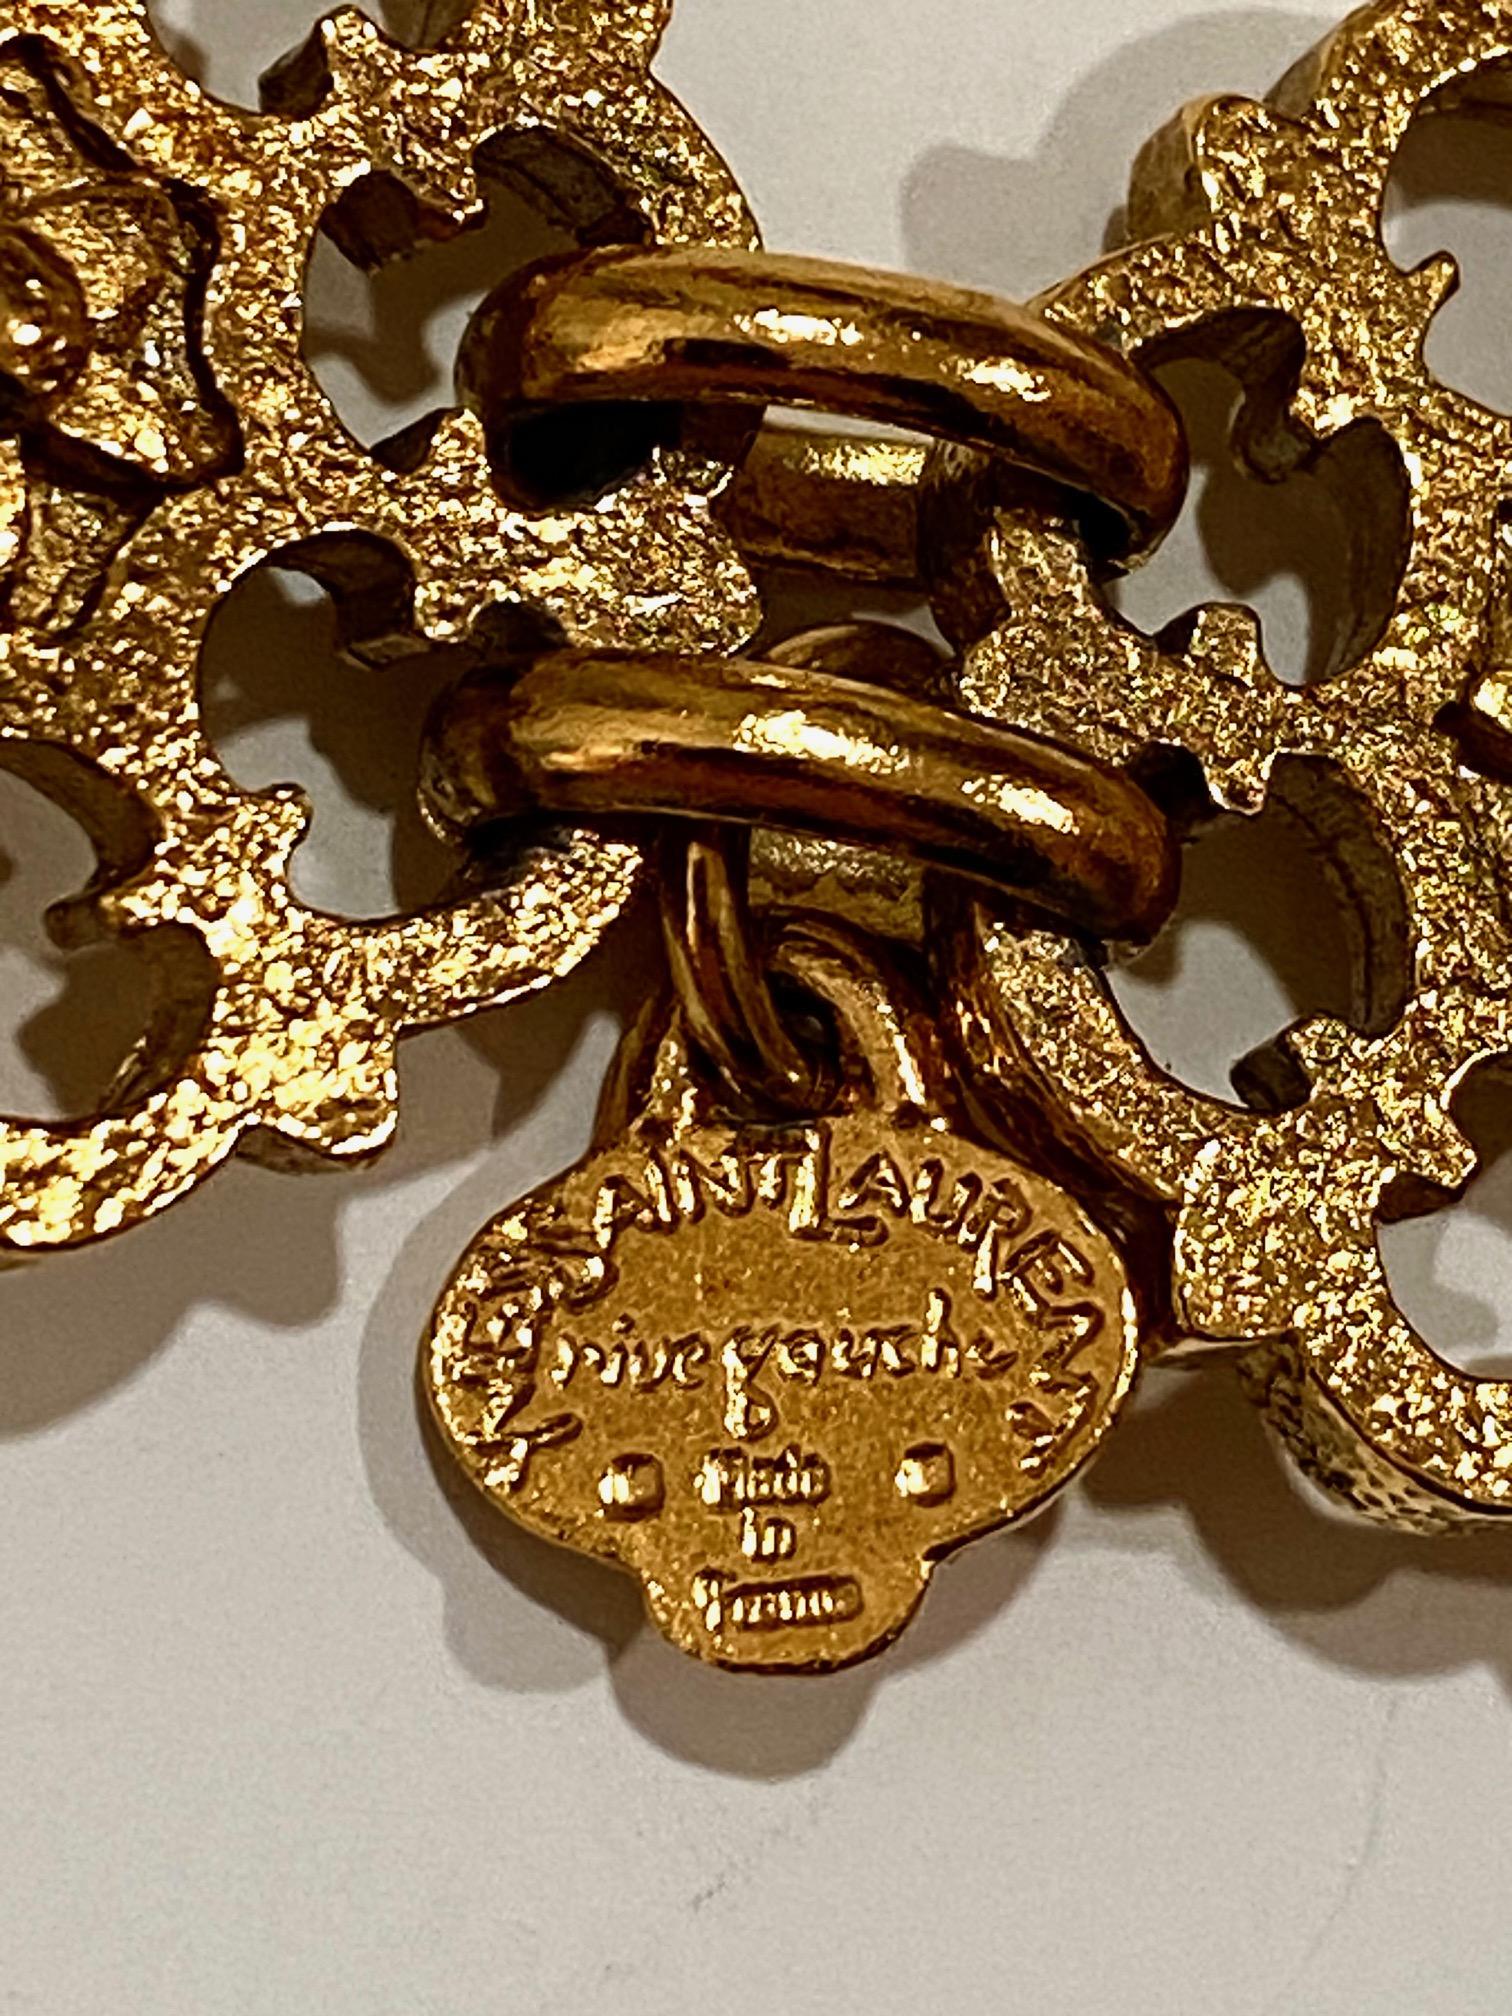 Yves Saint Laurent, Rive Gauche, 1980s Necklace / Belt For Sale 2